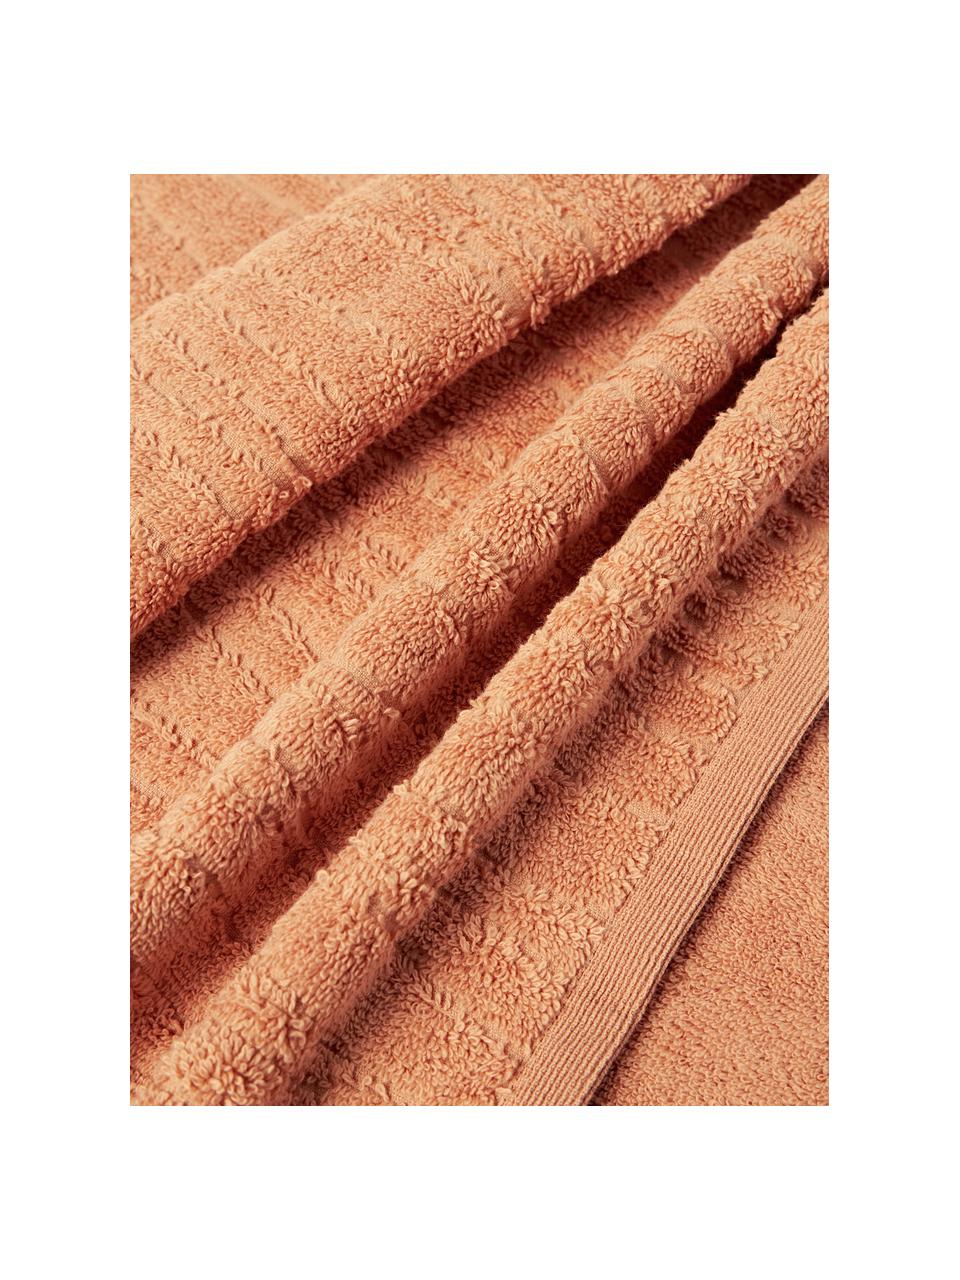 Asciugamano Audrina, varie misure, Peach, Asciugamano, Larg. 50 x Lung. 100 cm, 2 pz